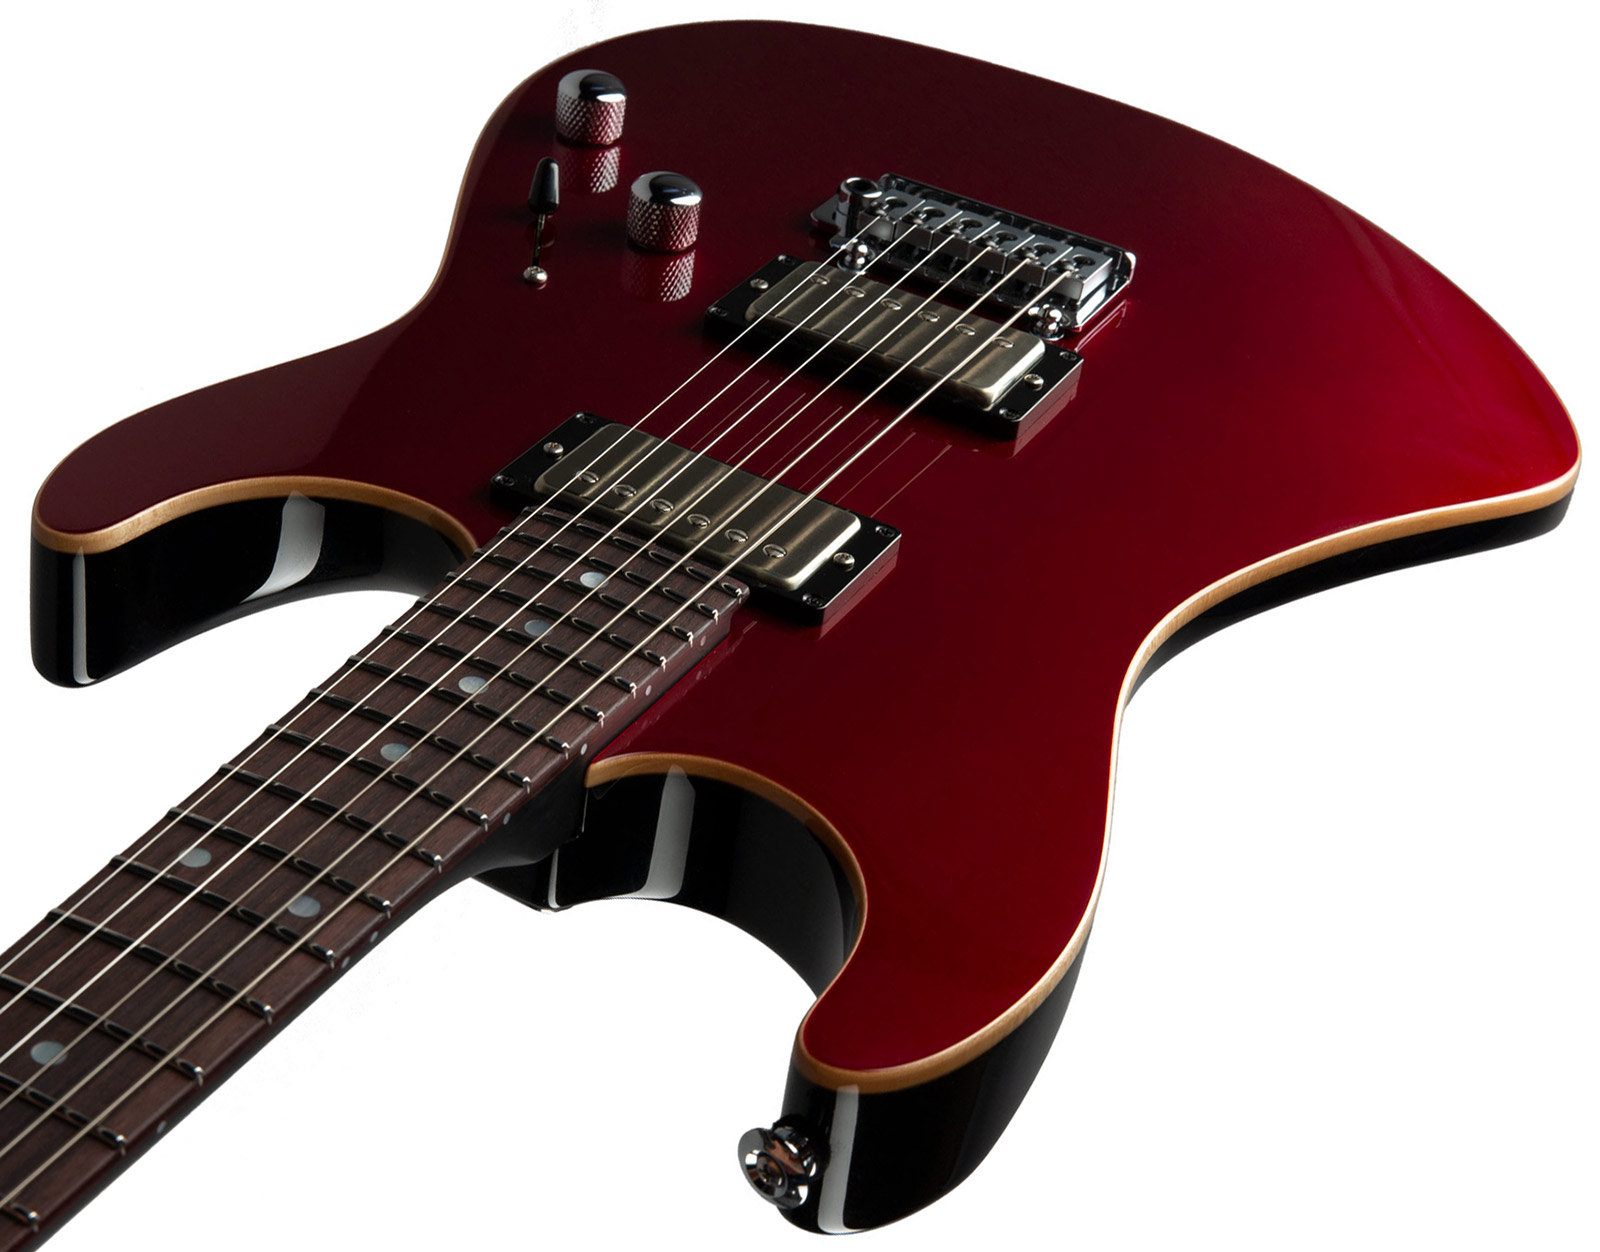 Suhr Pete Thorn Standard 01-sig-0029 Signature 2h Trem Rw - Garnet Red - E-Gitarre in Str-Form - Variation 3